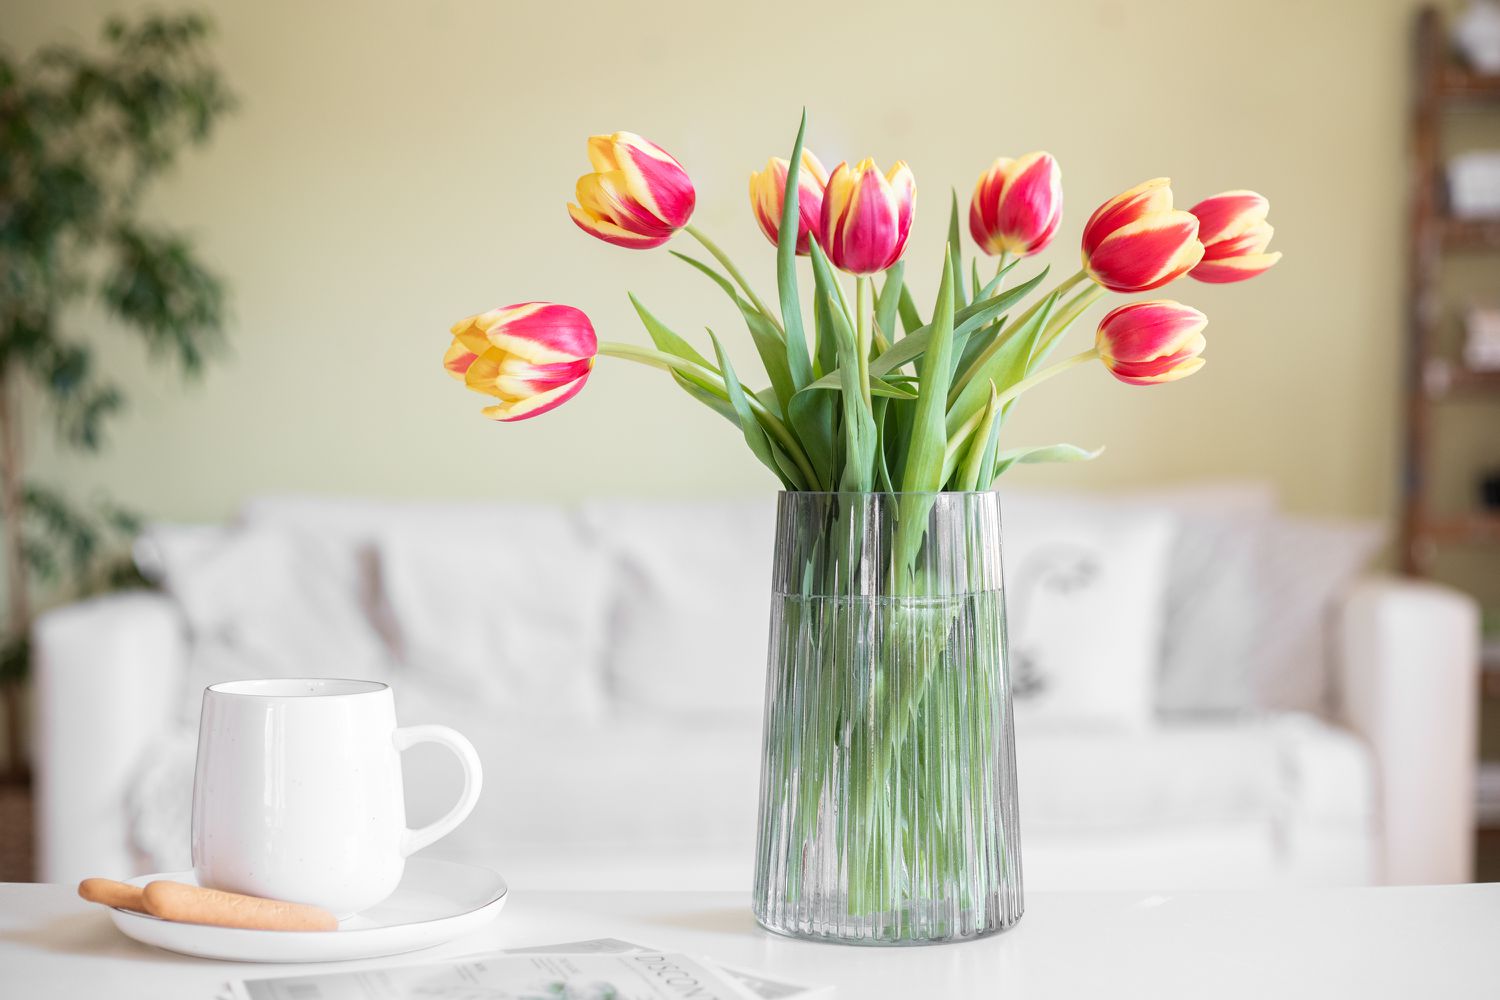 Comment faire durer vos tulipes coupées plus longtemps